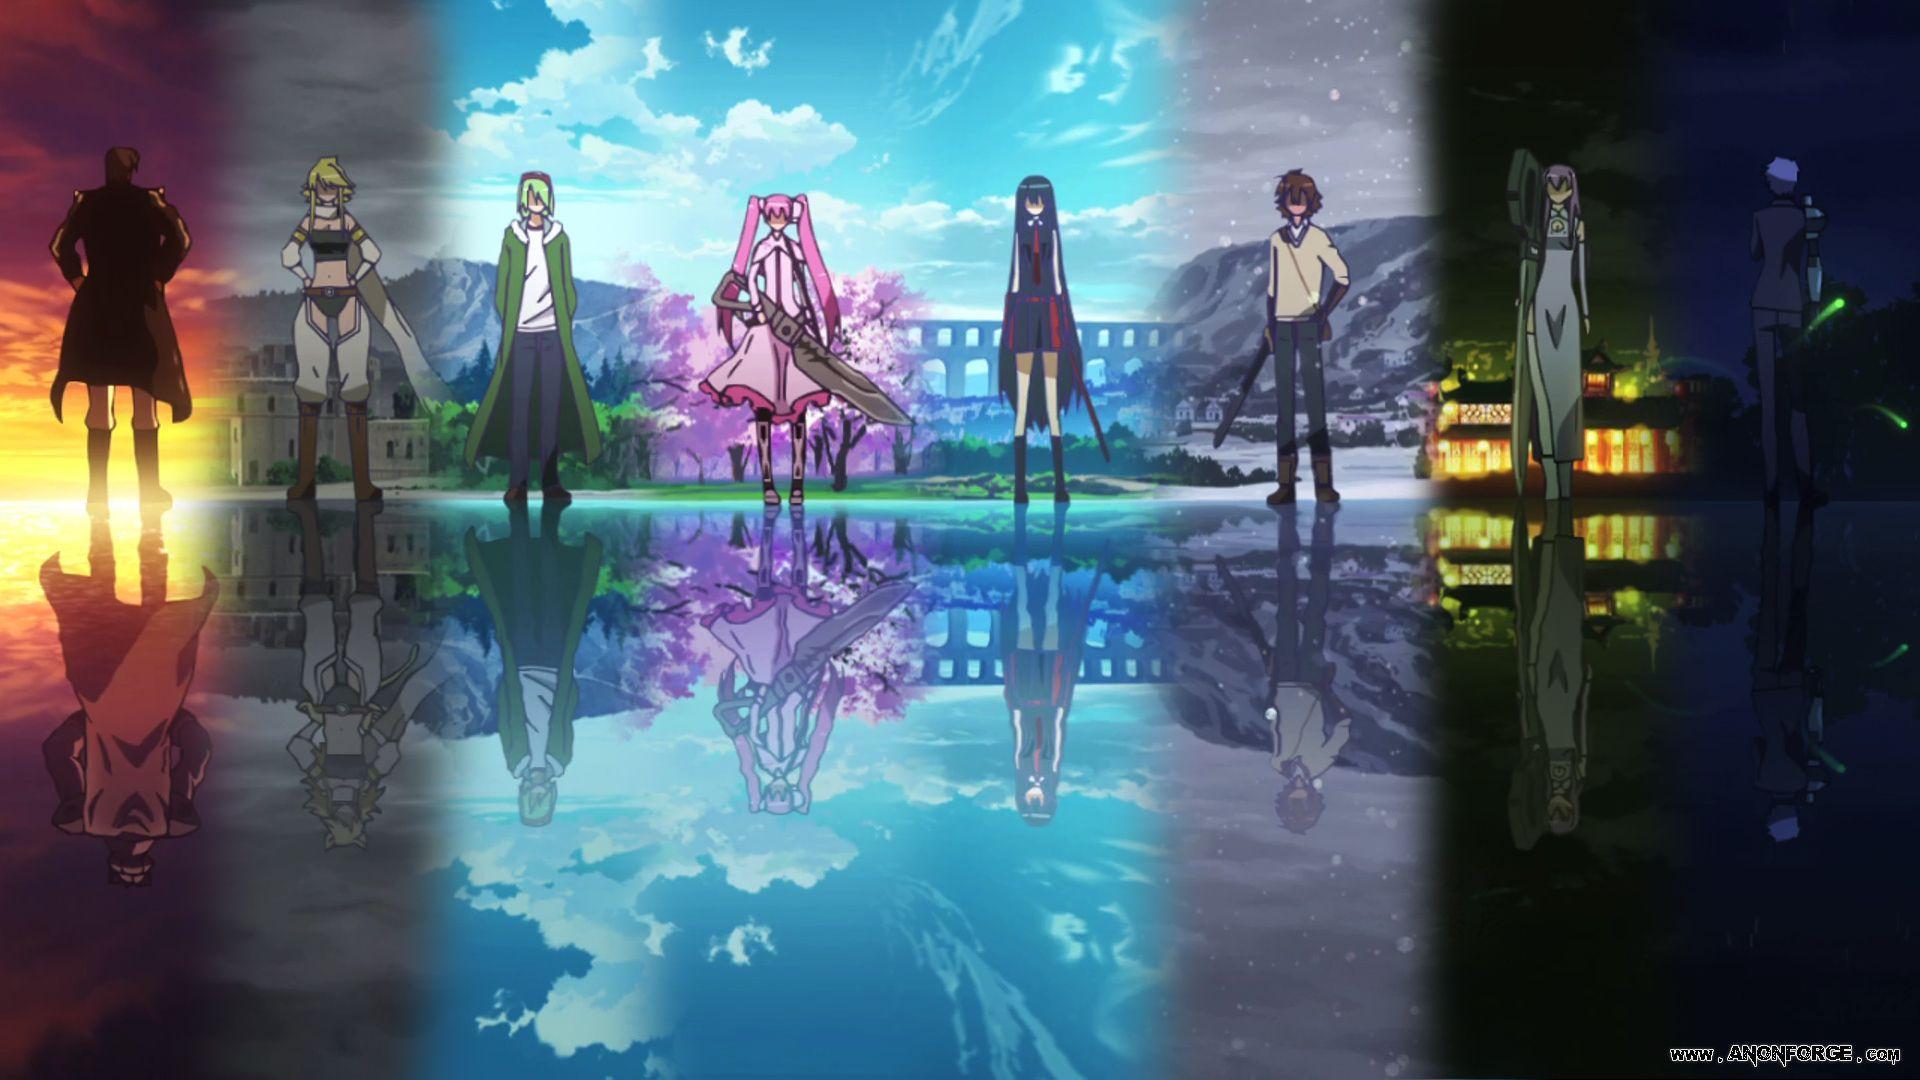 Akame ga Kill! (TV Series 2014-2014) - Imagens de Fundo — The